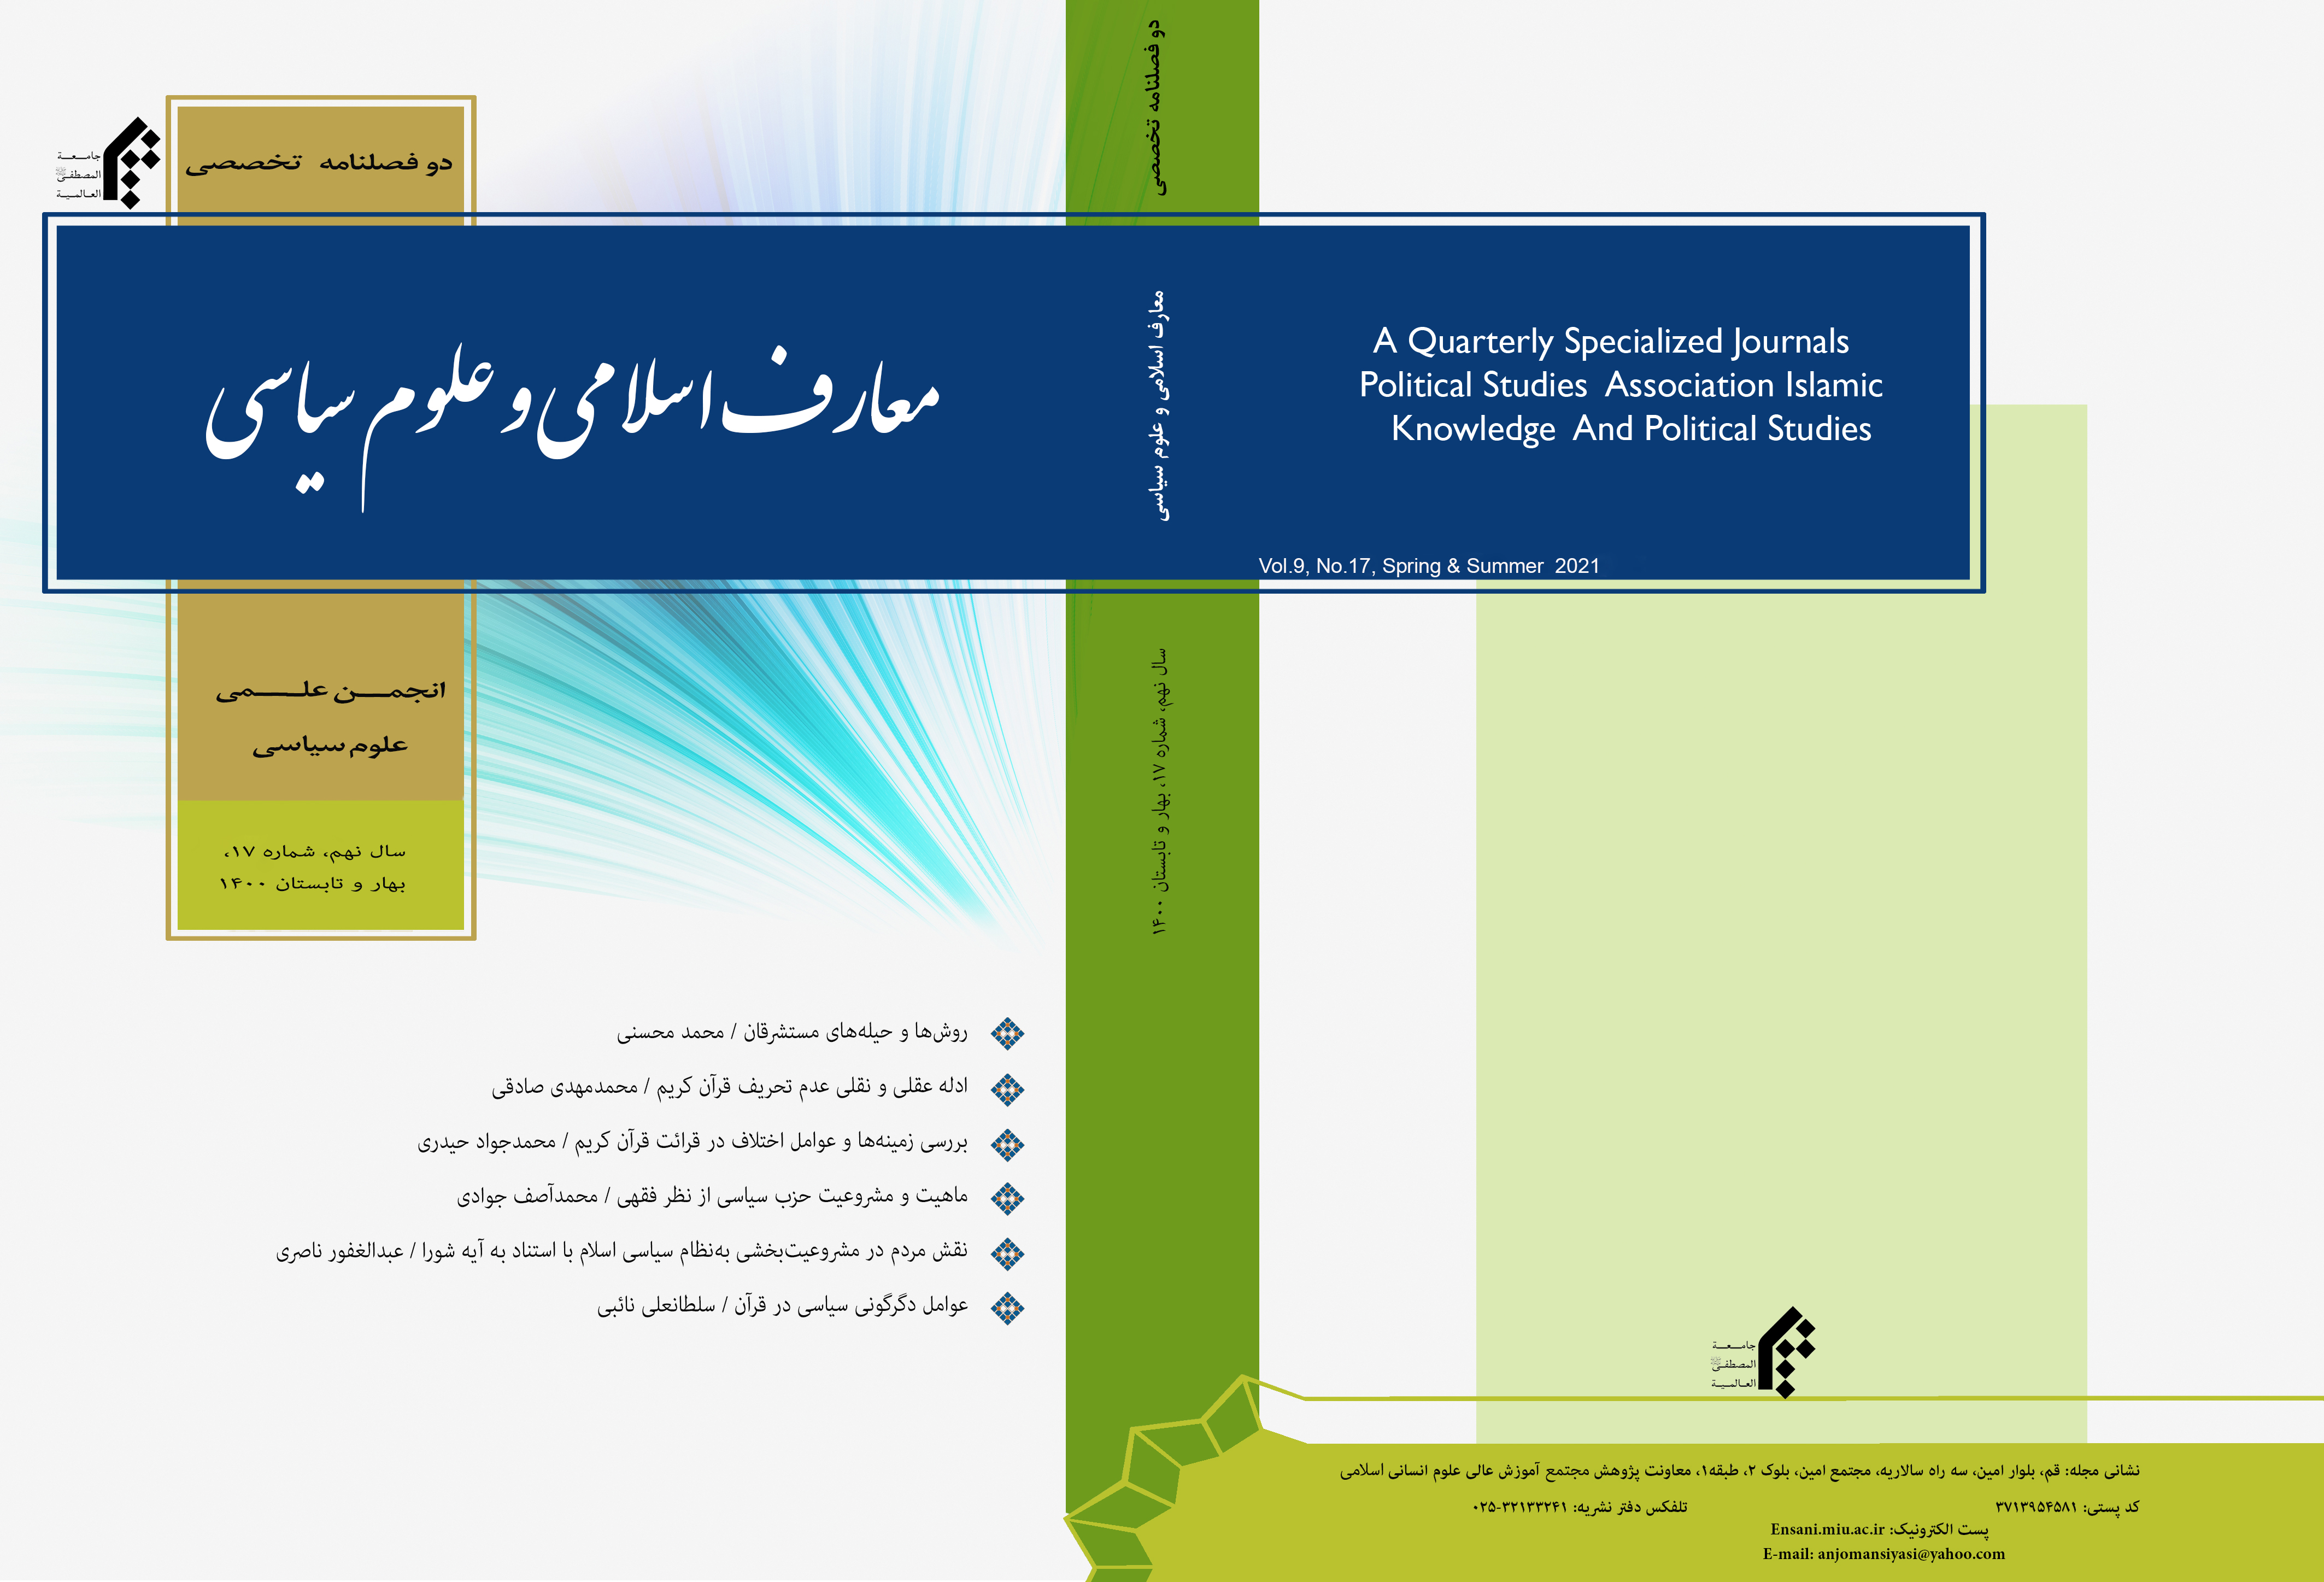 عوامل دگرگونی سیاسی در قرآن/ سلطان علی نایبی